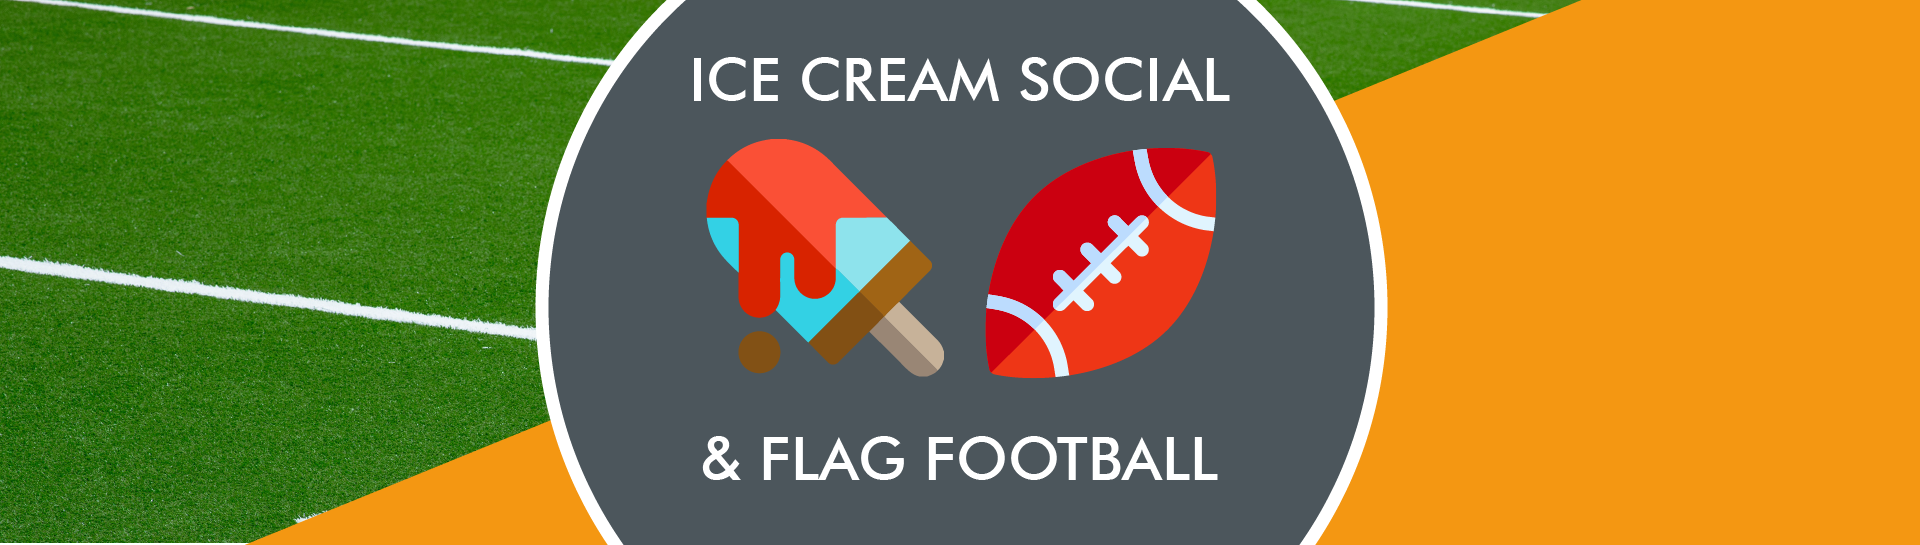 Ice cream social and flag football